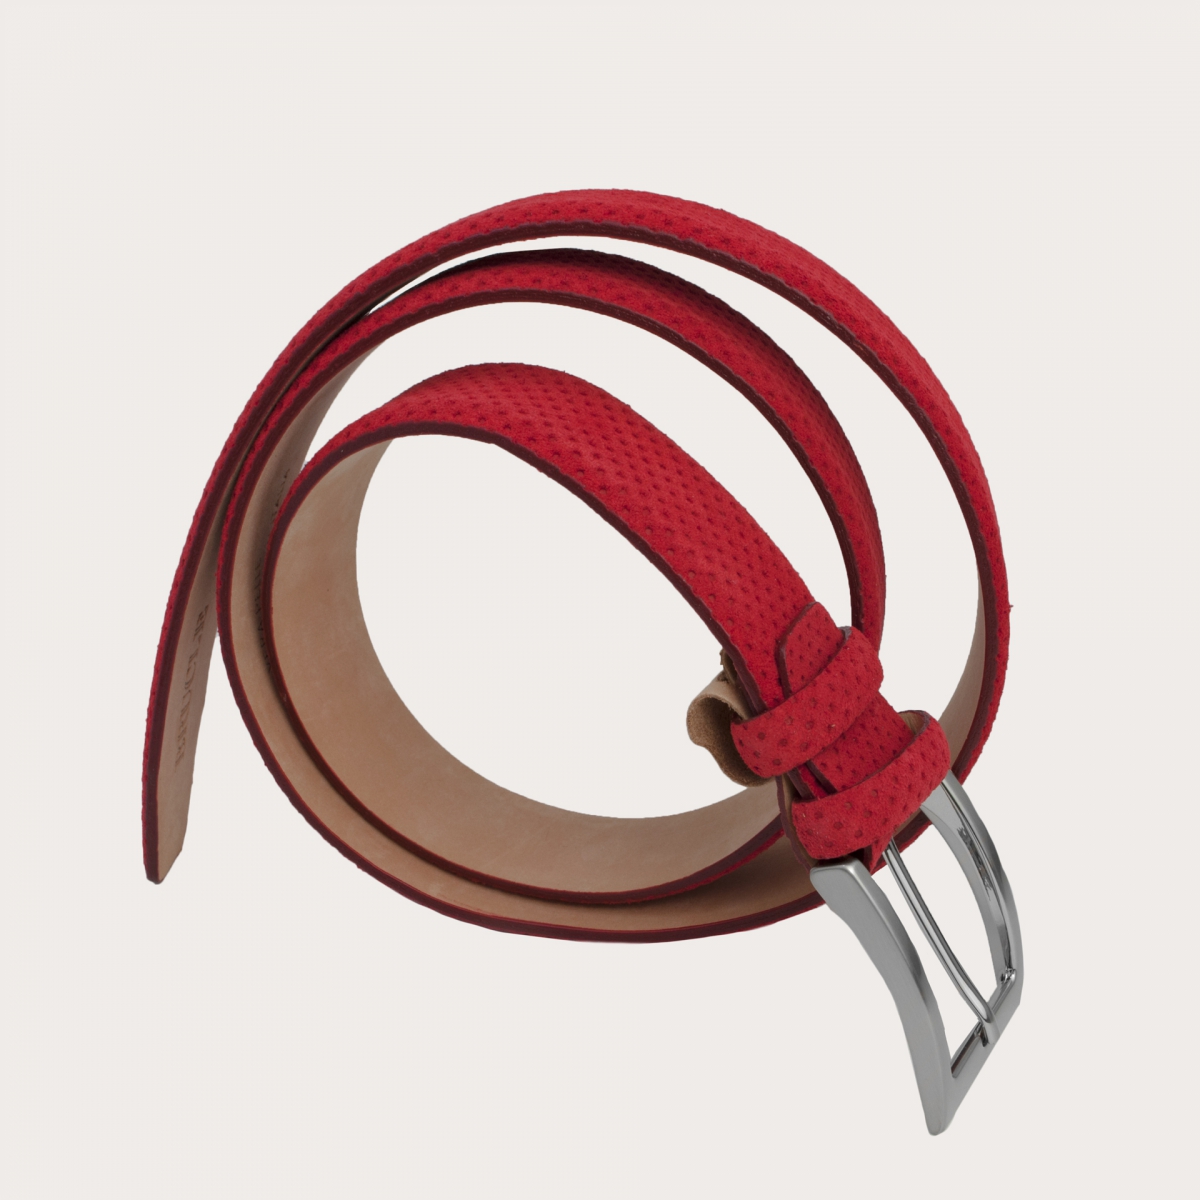 Cinturón rojo de serraje perforado